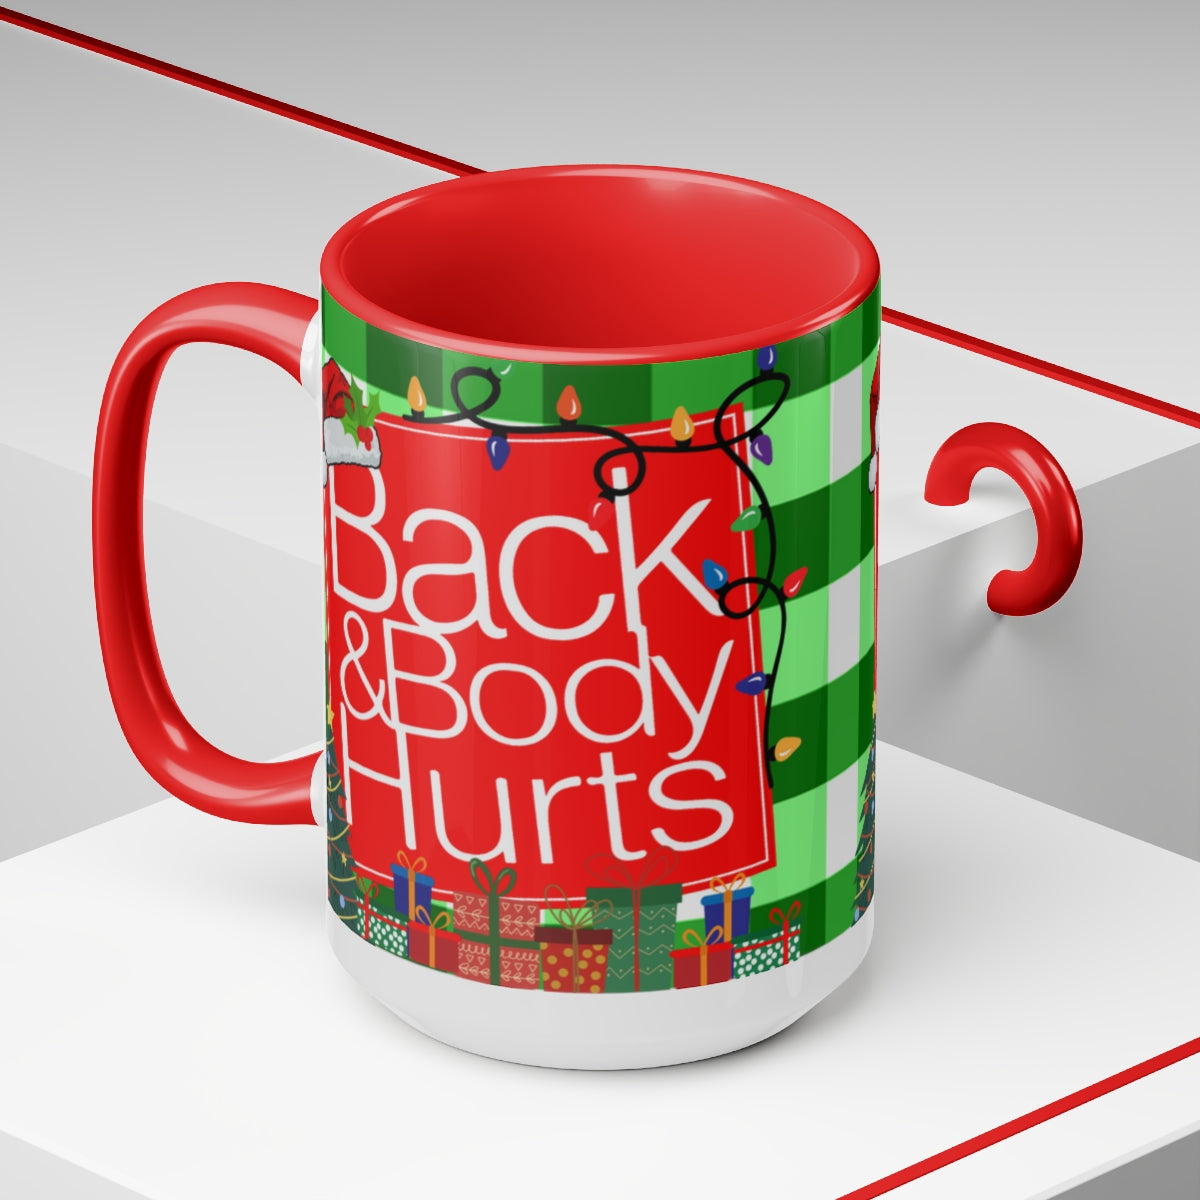 Christmas Back and Body Hurts 15oz Mug